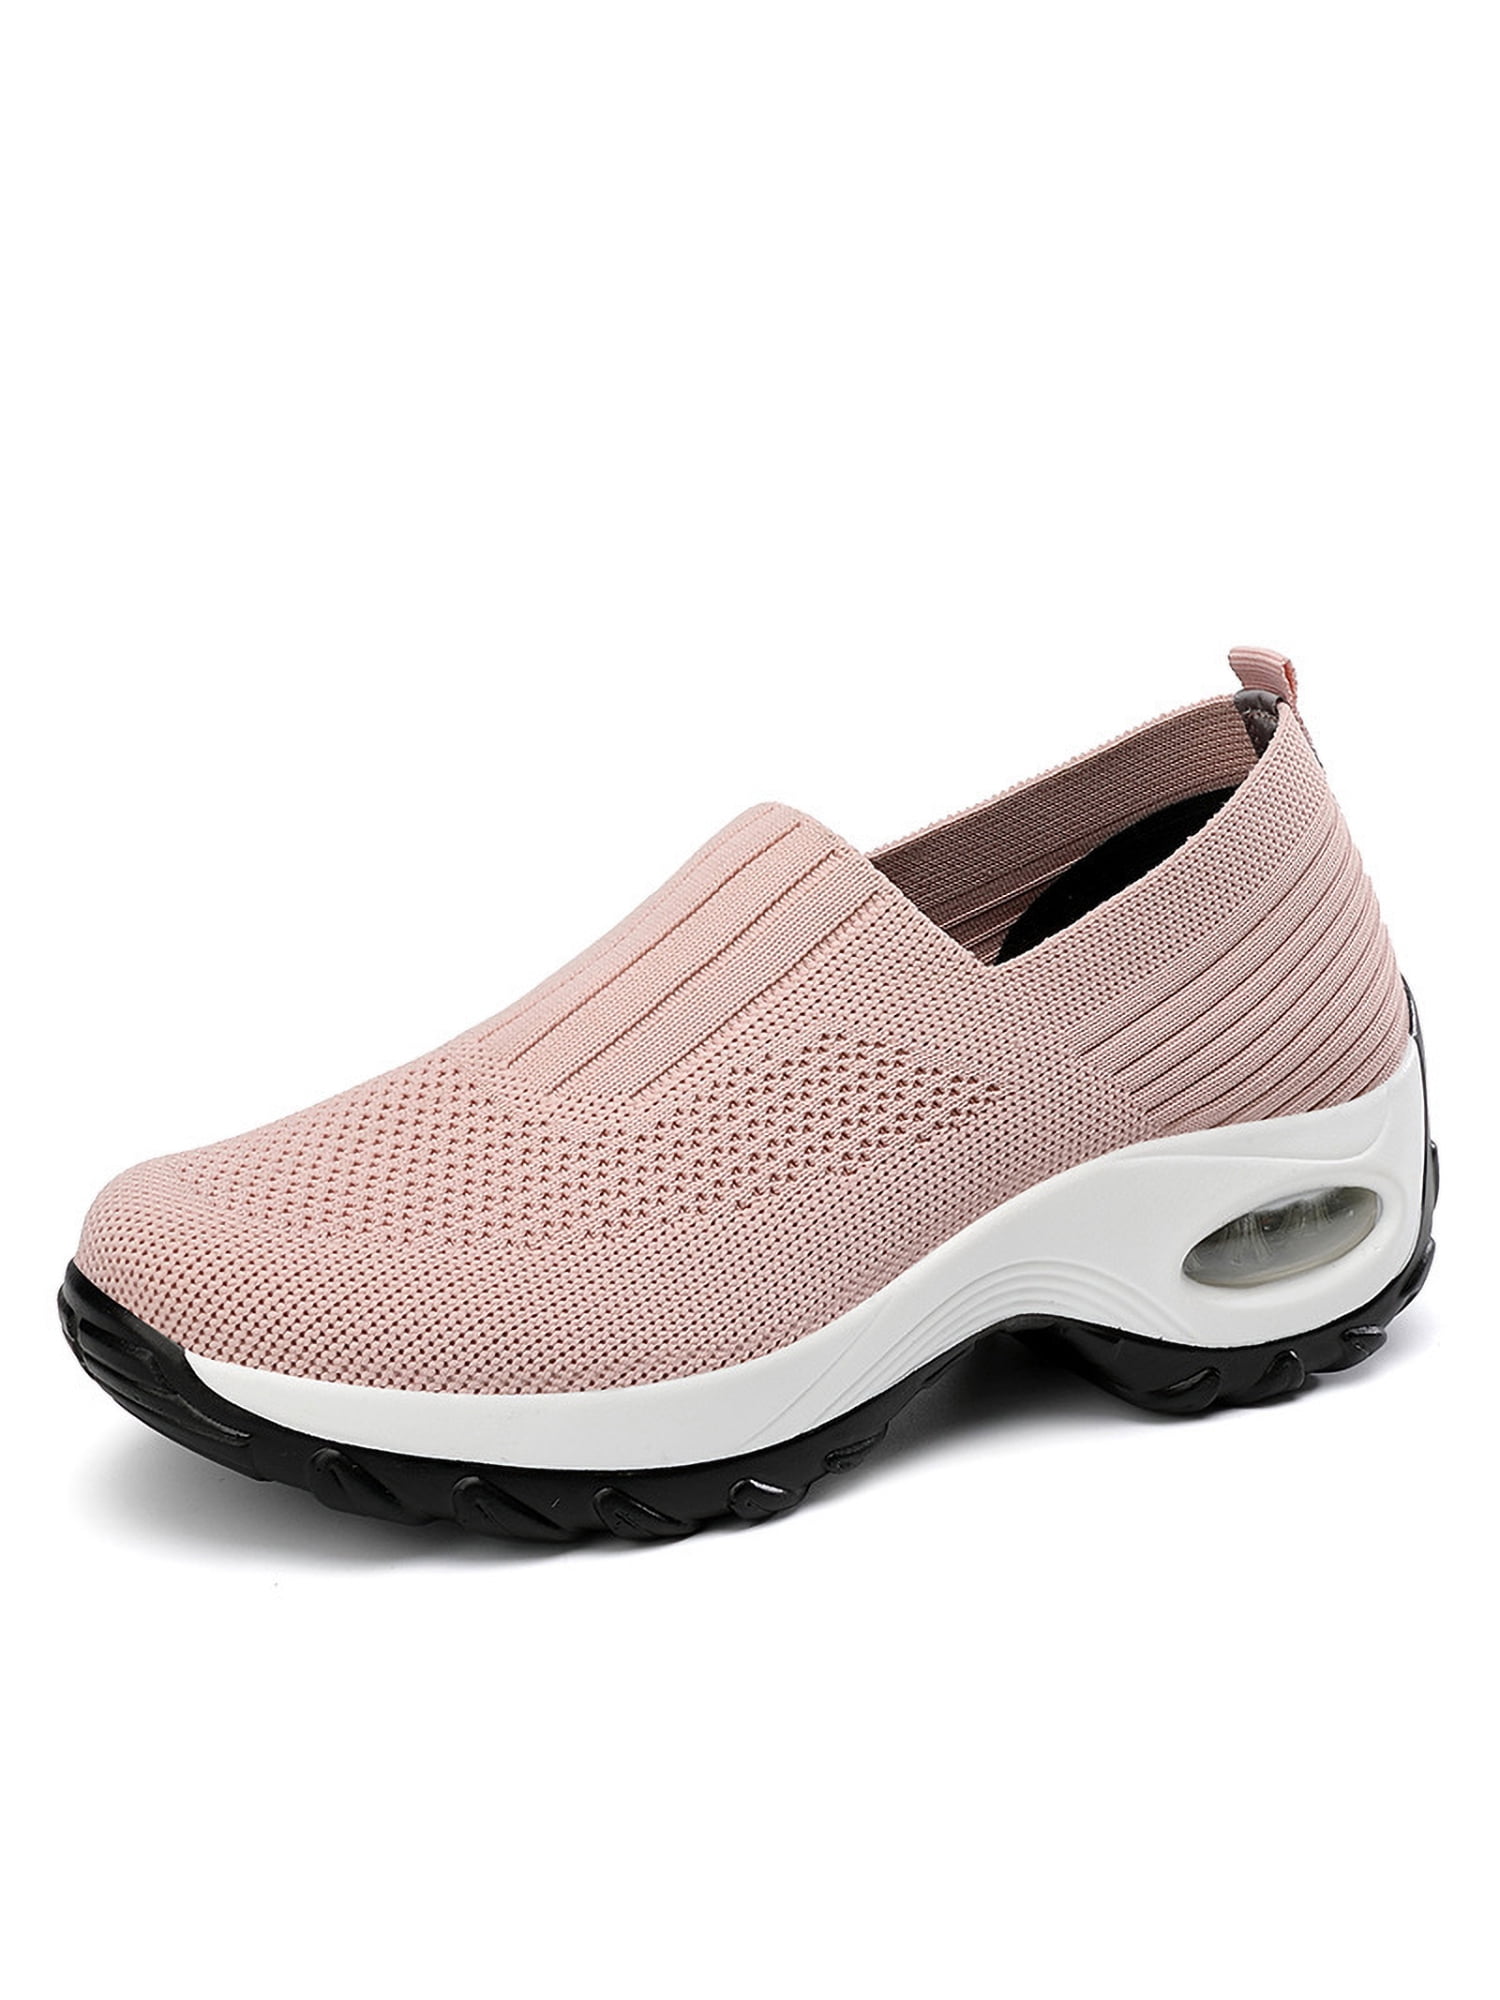 Ymiytan Women's Flats Hollow Out Sneaker Mesh Sock Sneakers Outdoor  Lightweight Wear Resistant Slip On Walking Shoe Pink 8.5 